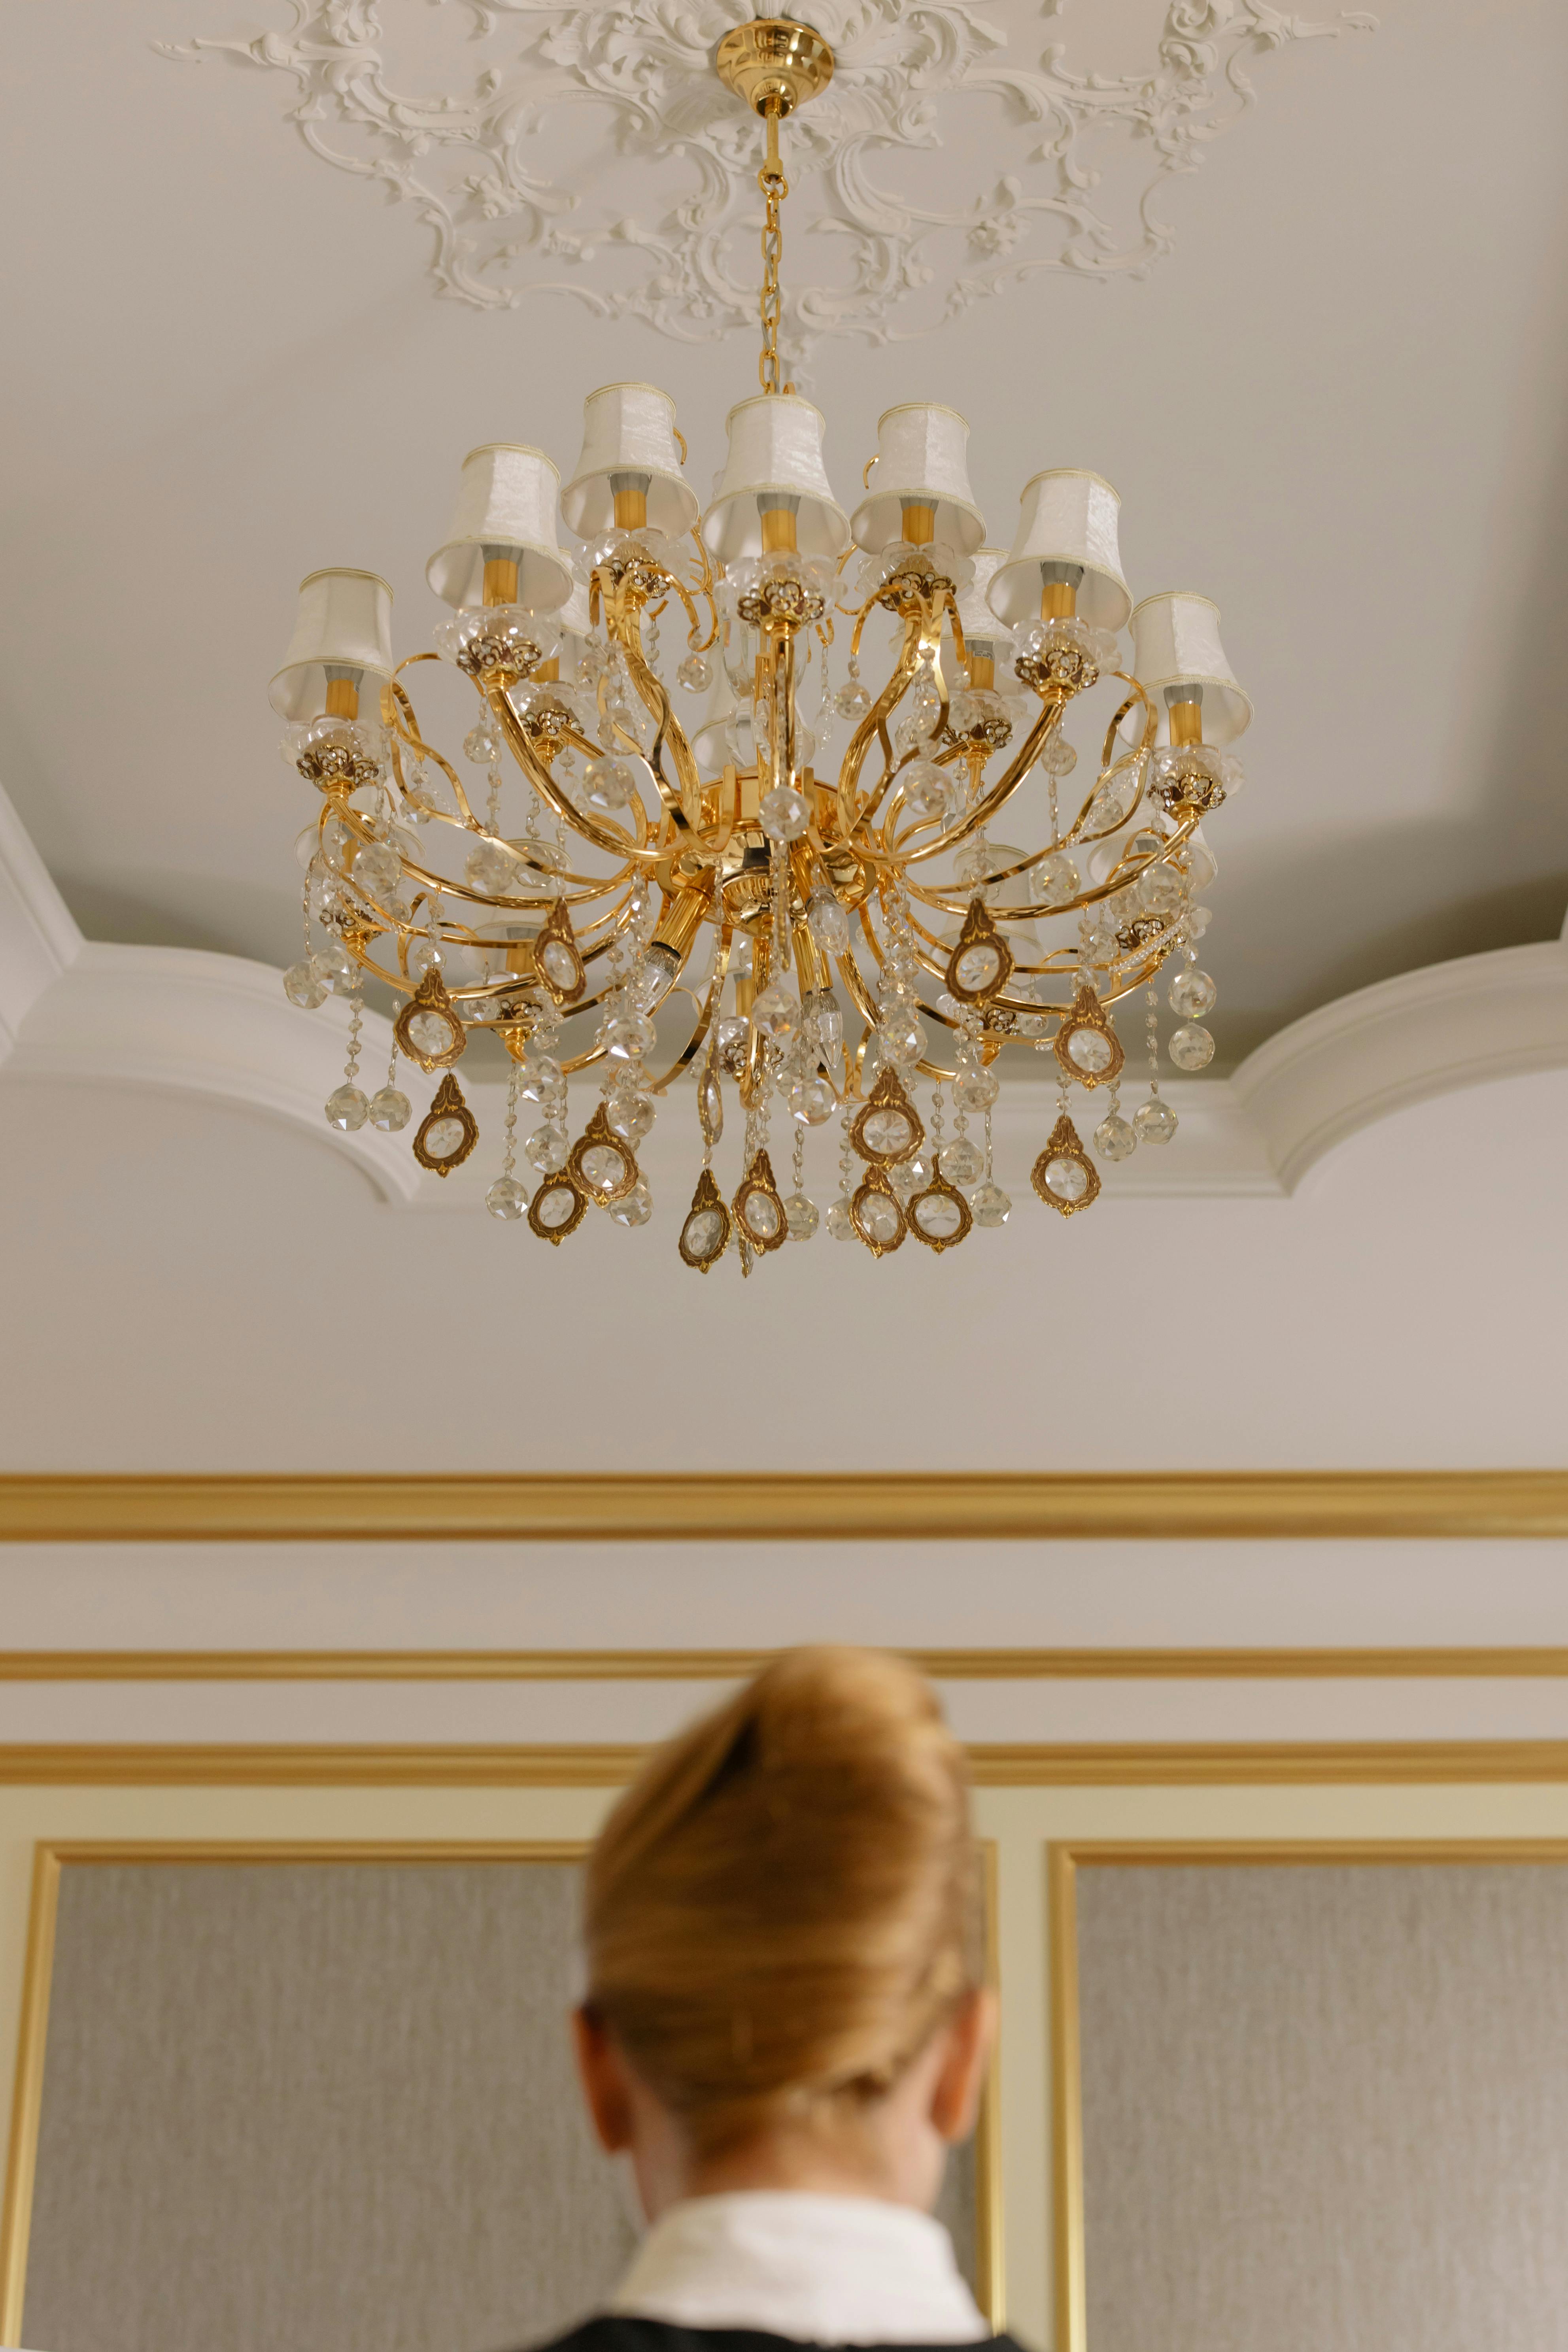 Femme debout sous le lustre d'une chambre d'hôtel | Source : Pexels